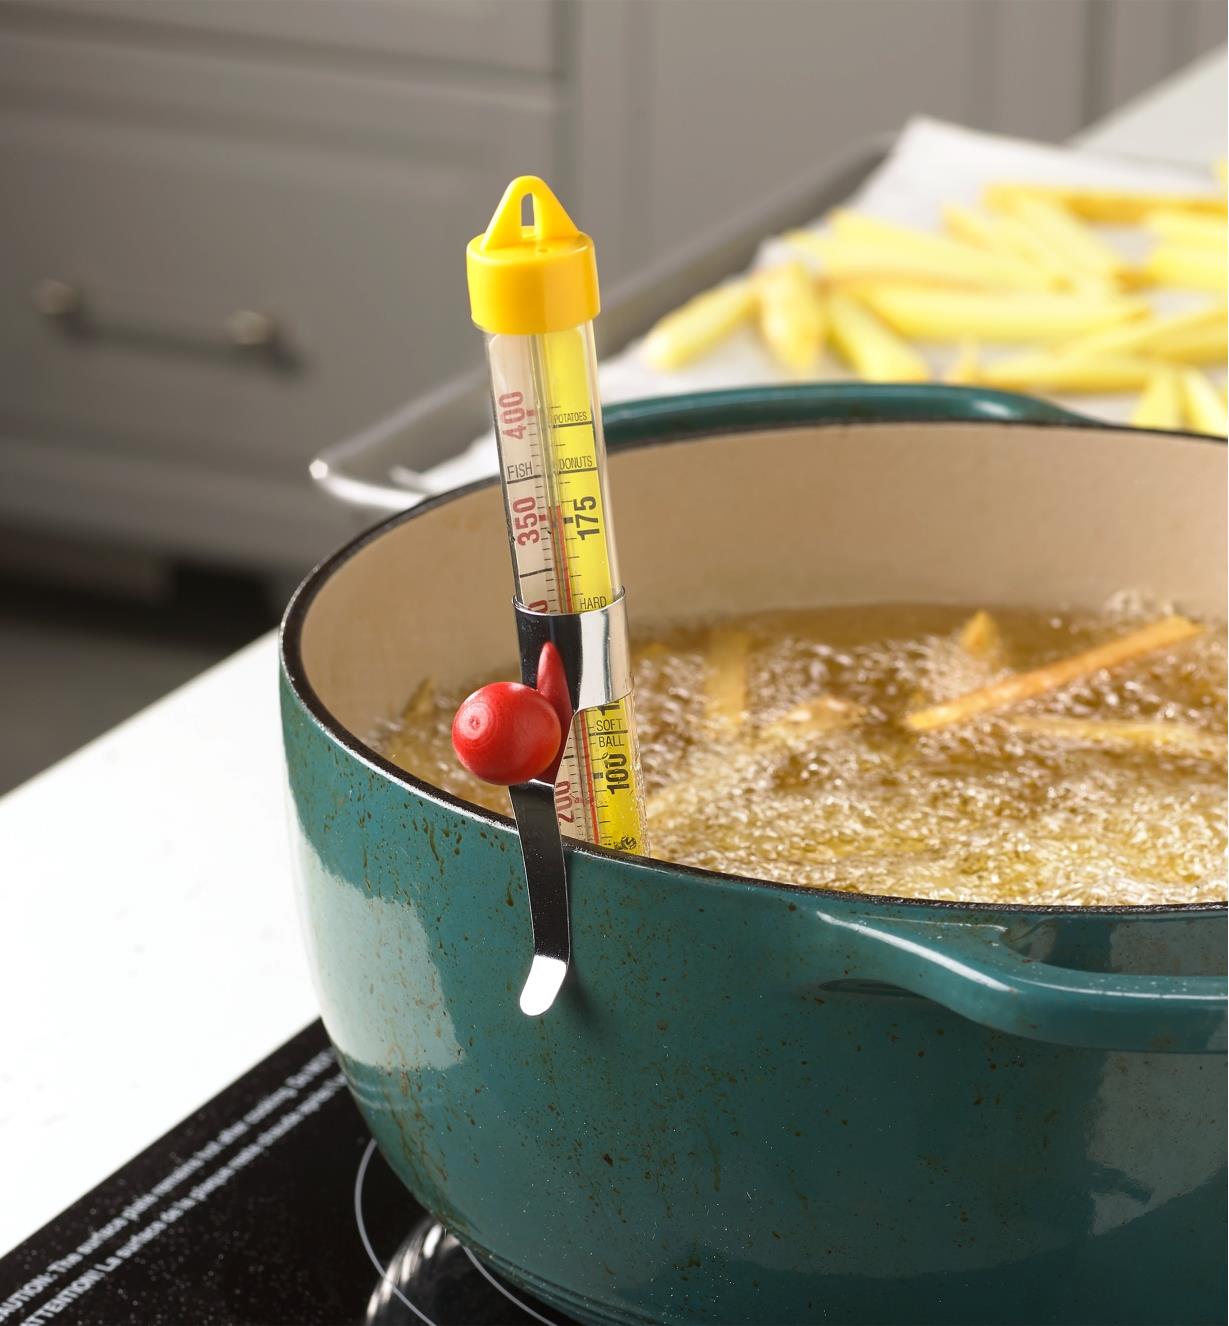 Thermomètre pour friture et confiserie accroché à une casserole servant à préparer des frites